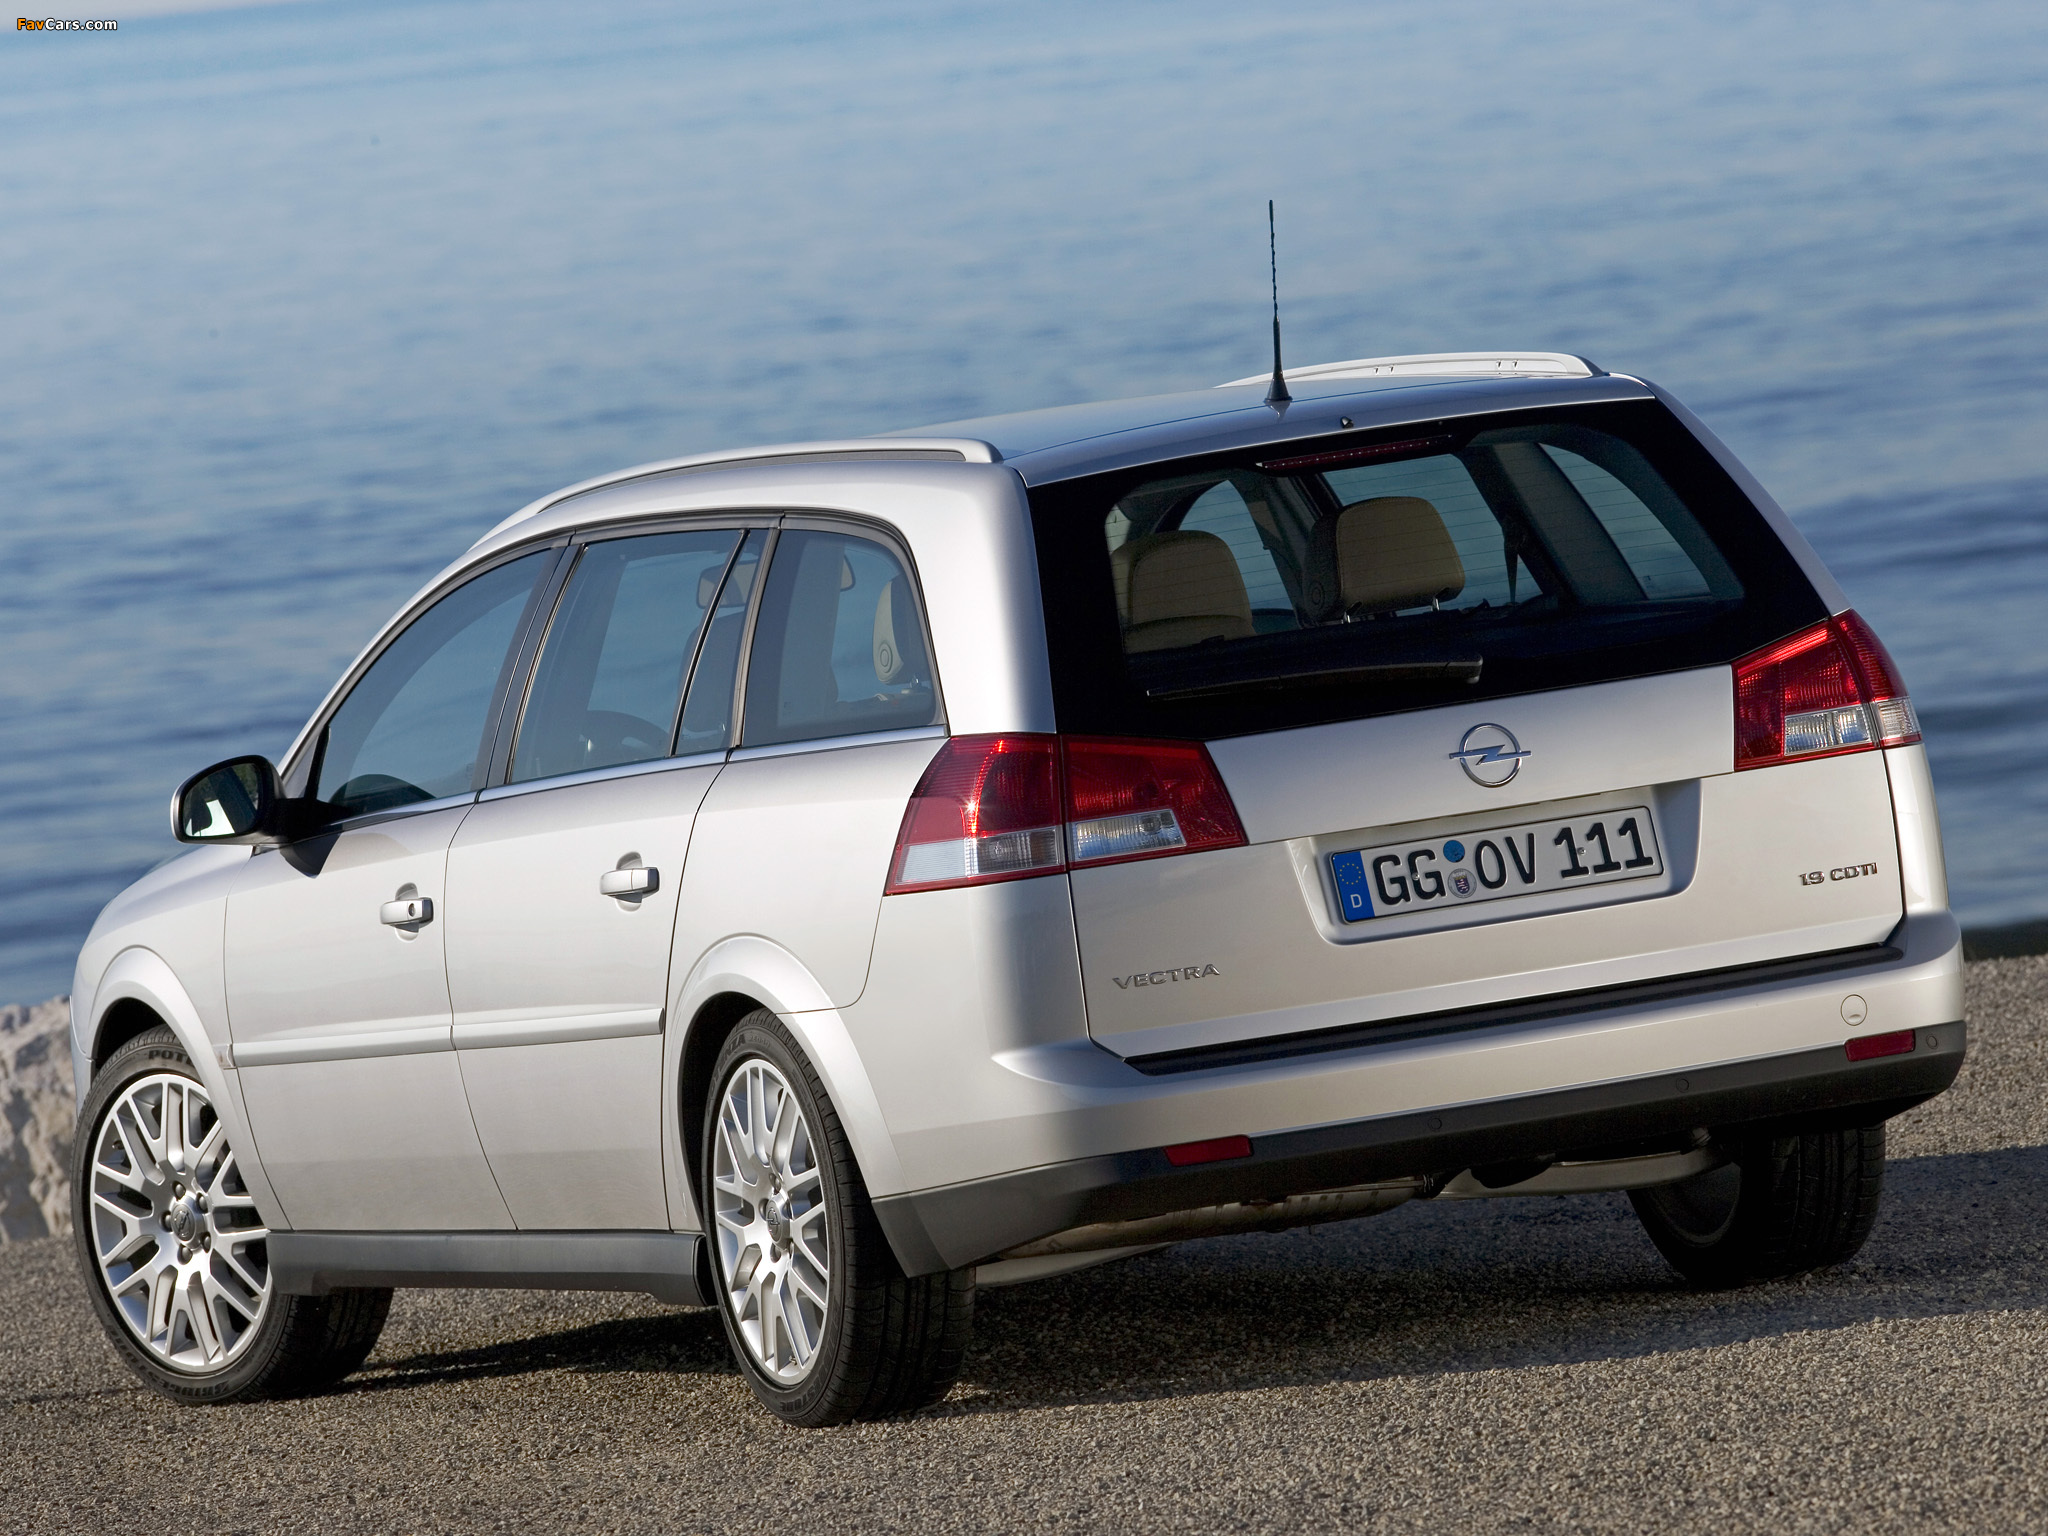 Вектра караван. Opel Vectra универсал 2005. Opel Vectra c 2008 универсал. Opel Vectra универсал 2006. Опель Вектра с 1.8 2008 универсал.